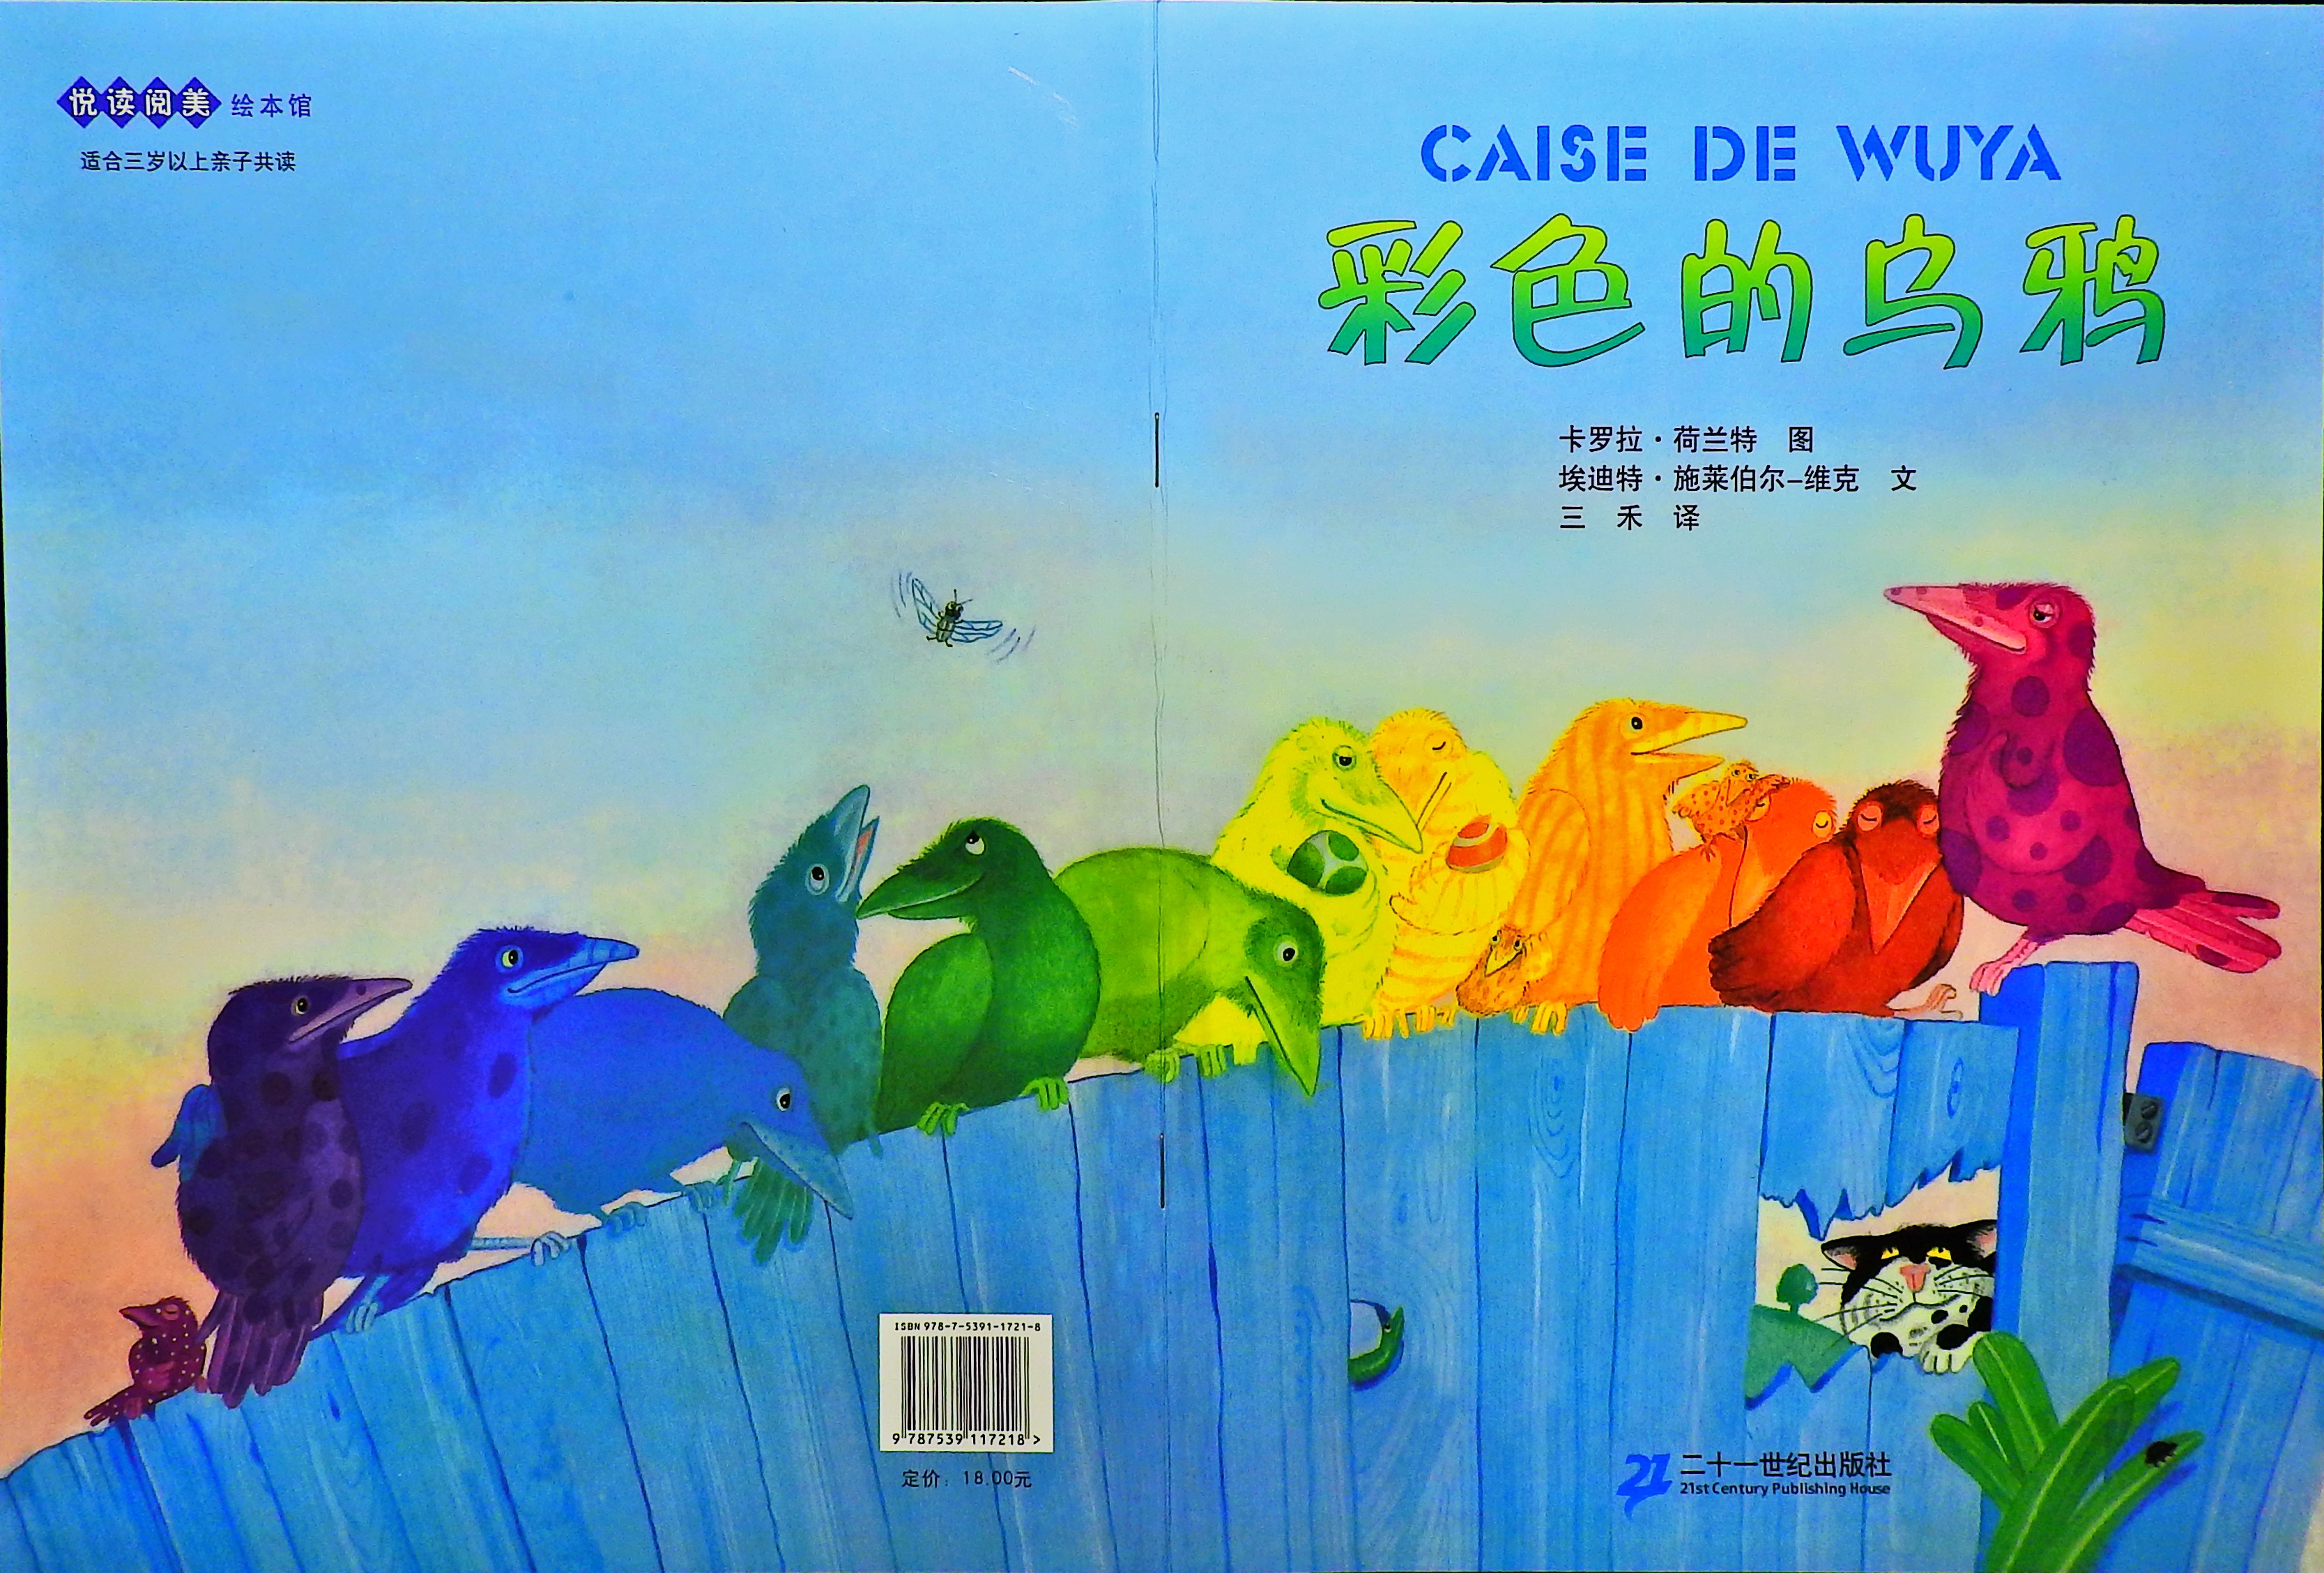 彩色的乌鸦 (01),绘本,绘本故事,绘本阅读,故事书,童书,图画书,课外阅读